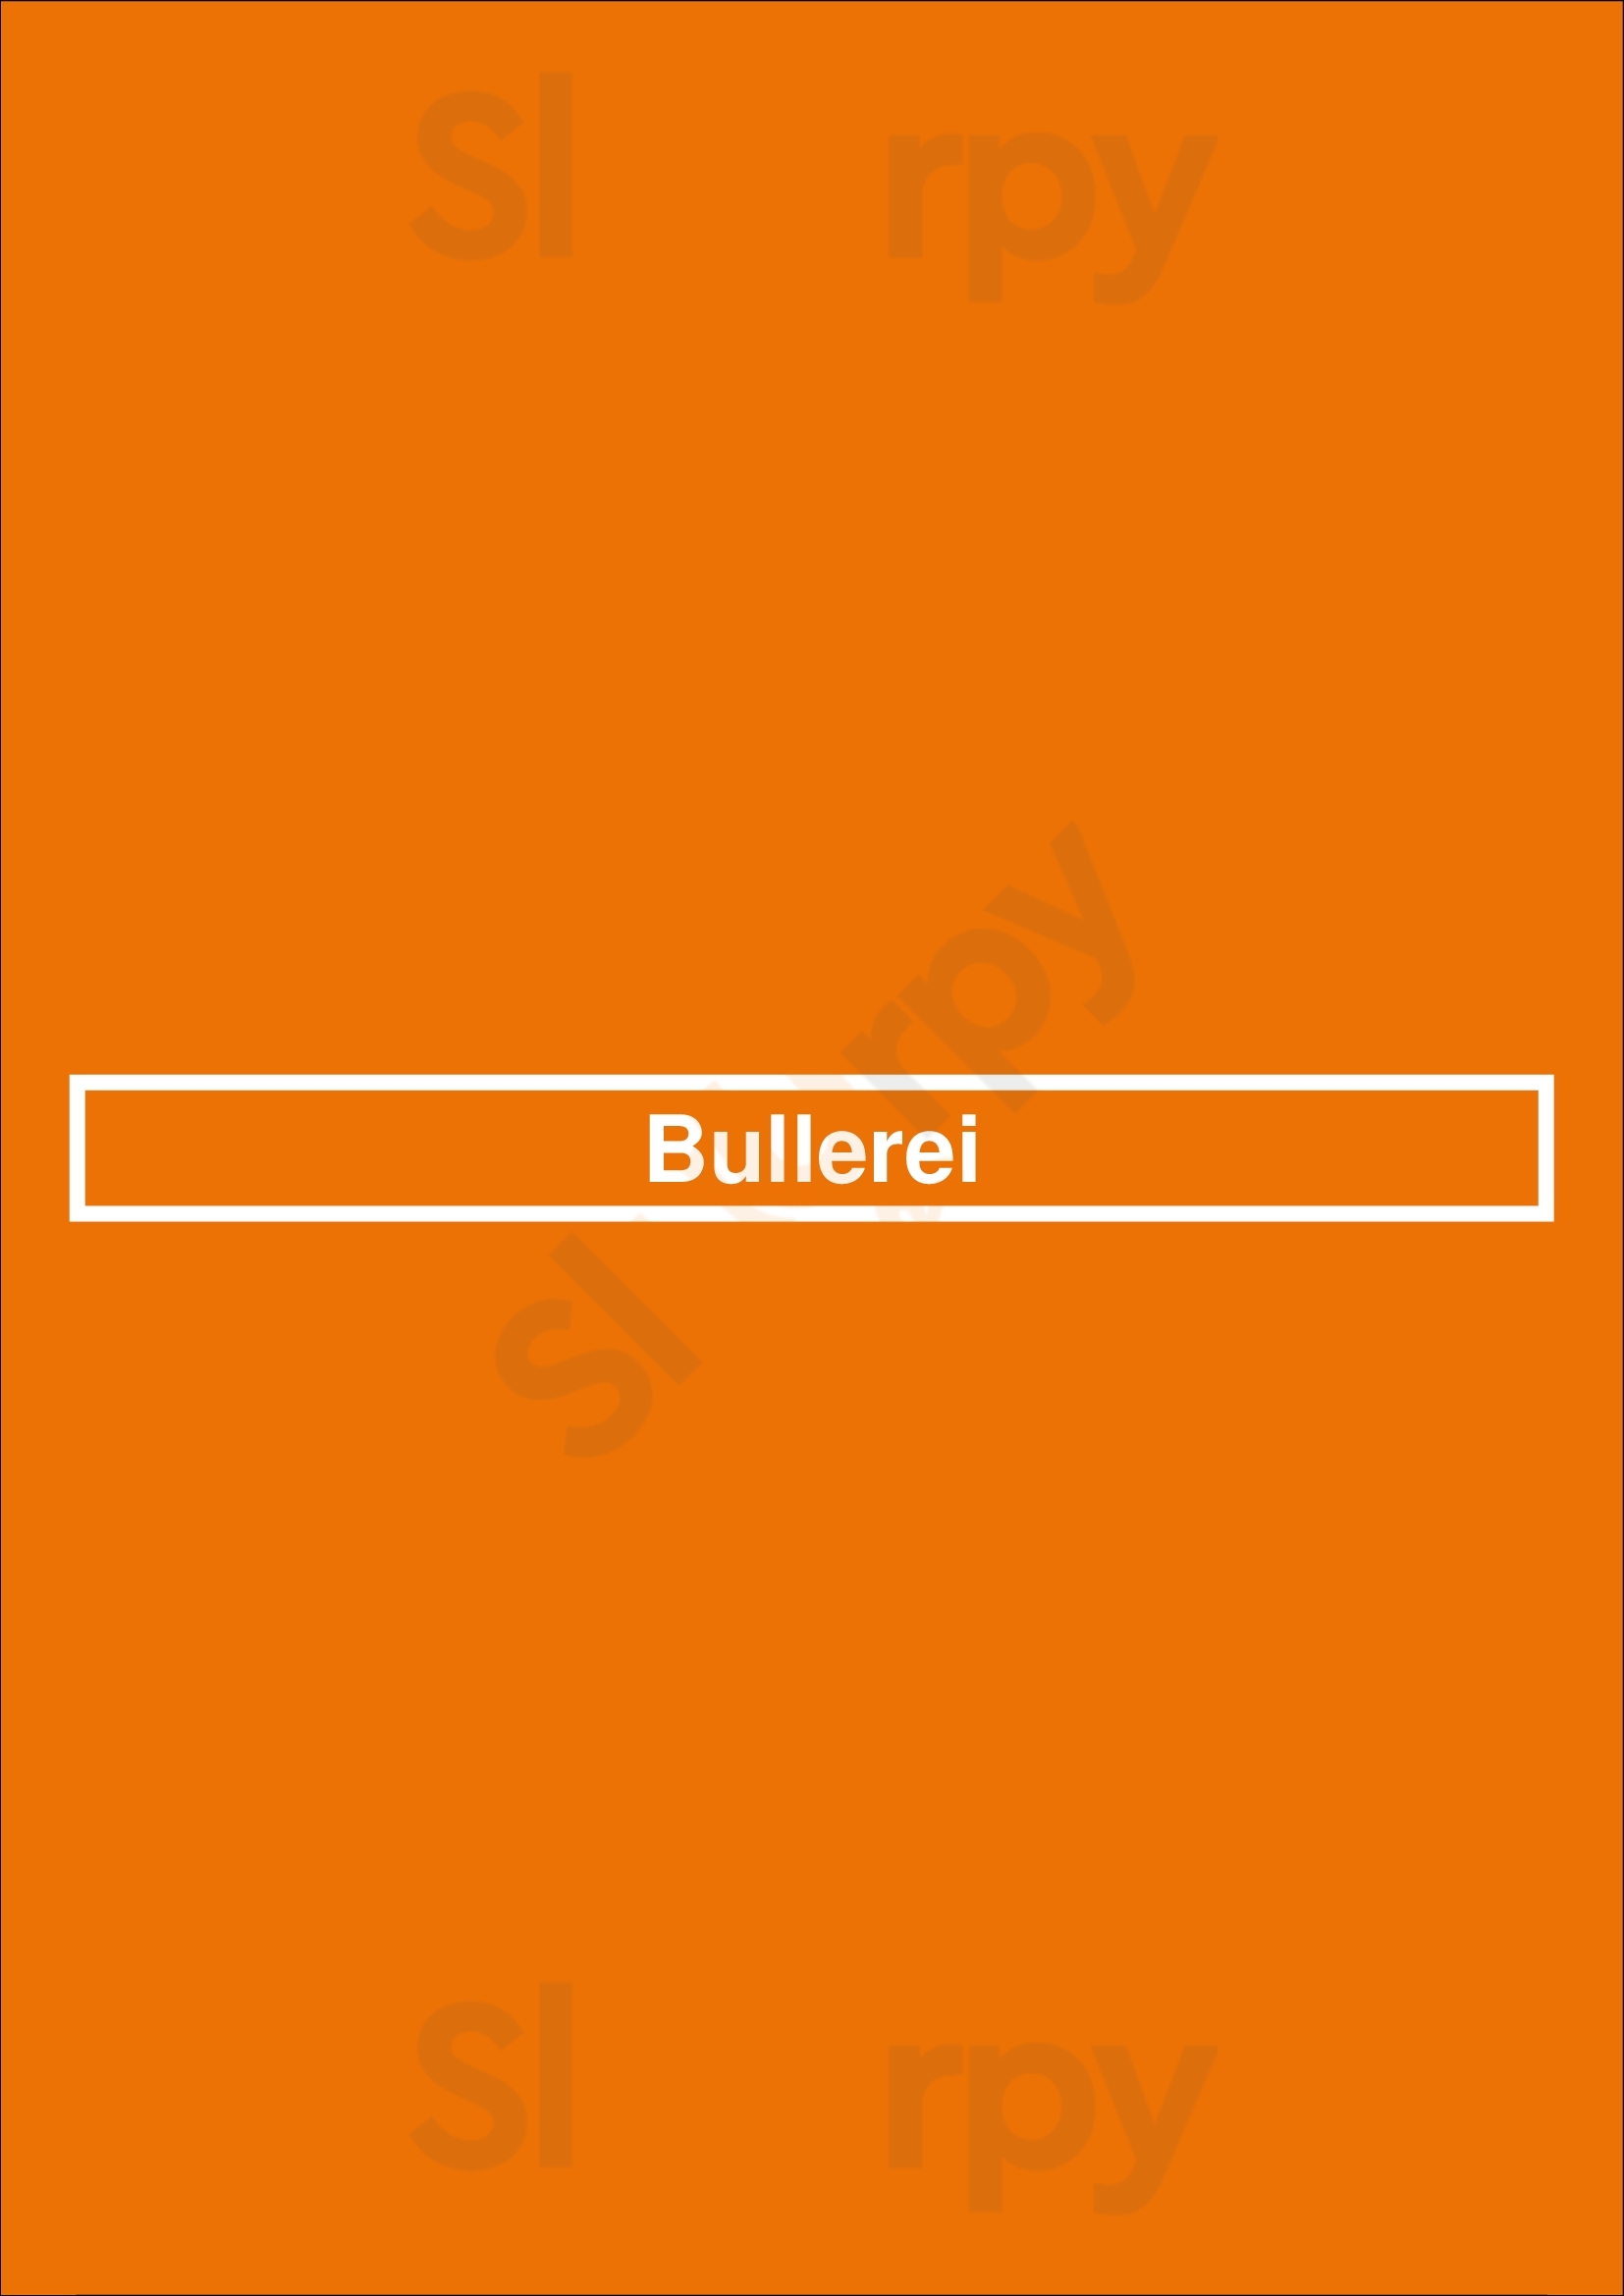 Bullerei Hamburg Menu - 1